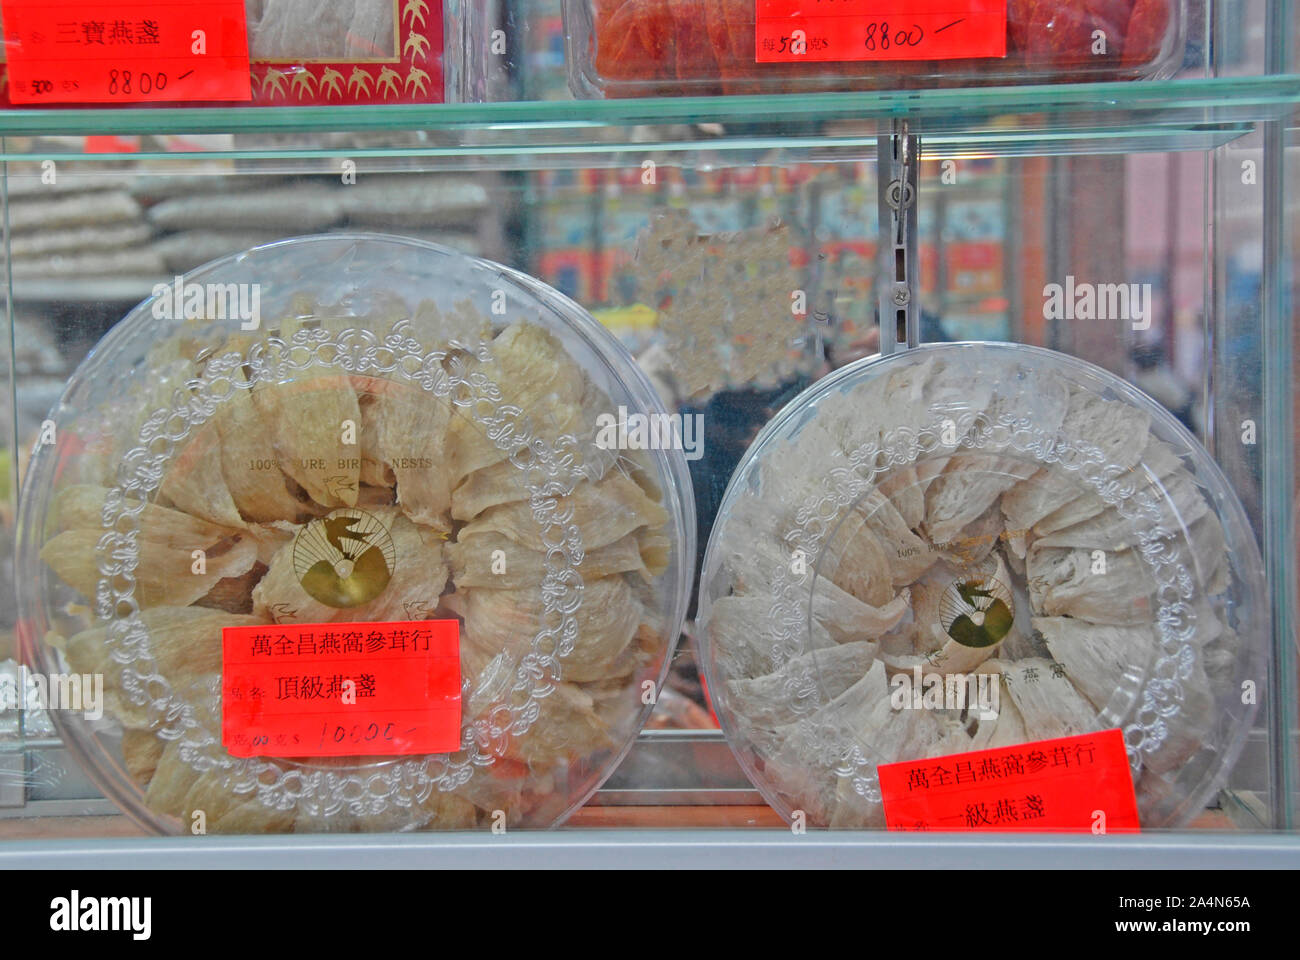 Avaler des nids dans la fenêtre d'un magasin spécialisé, l'île de Hong Kong, Chine Banque D'Images